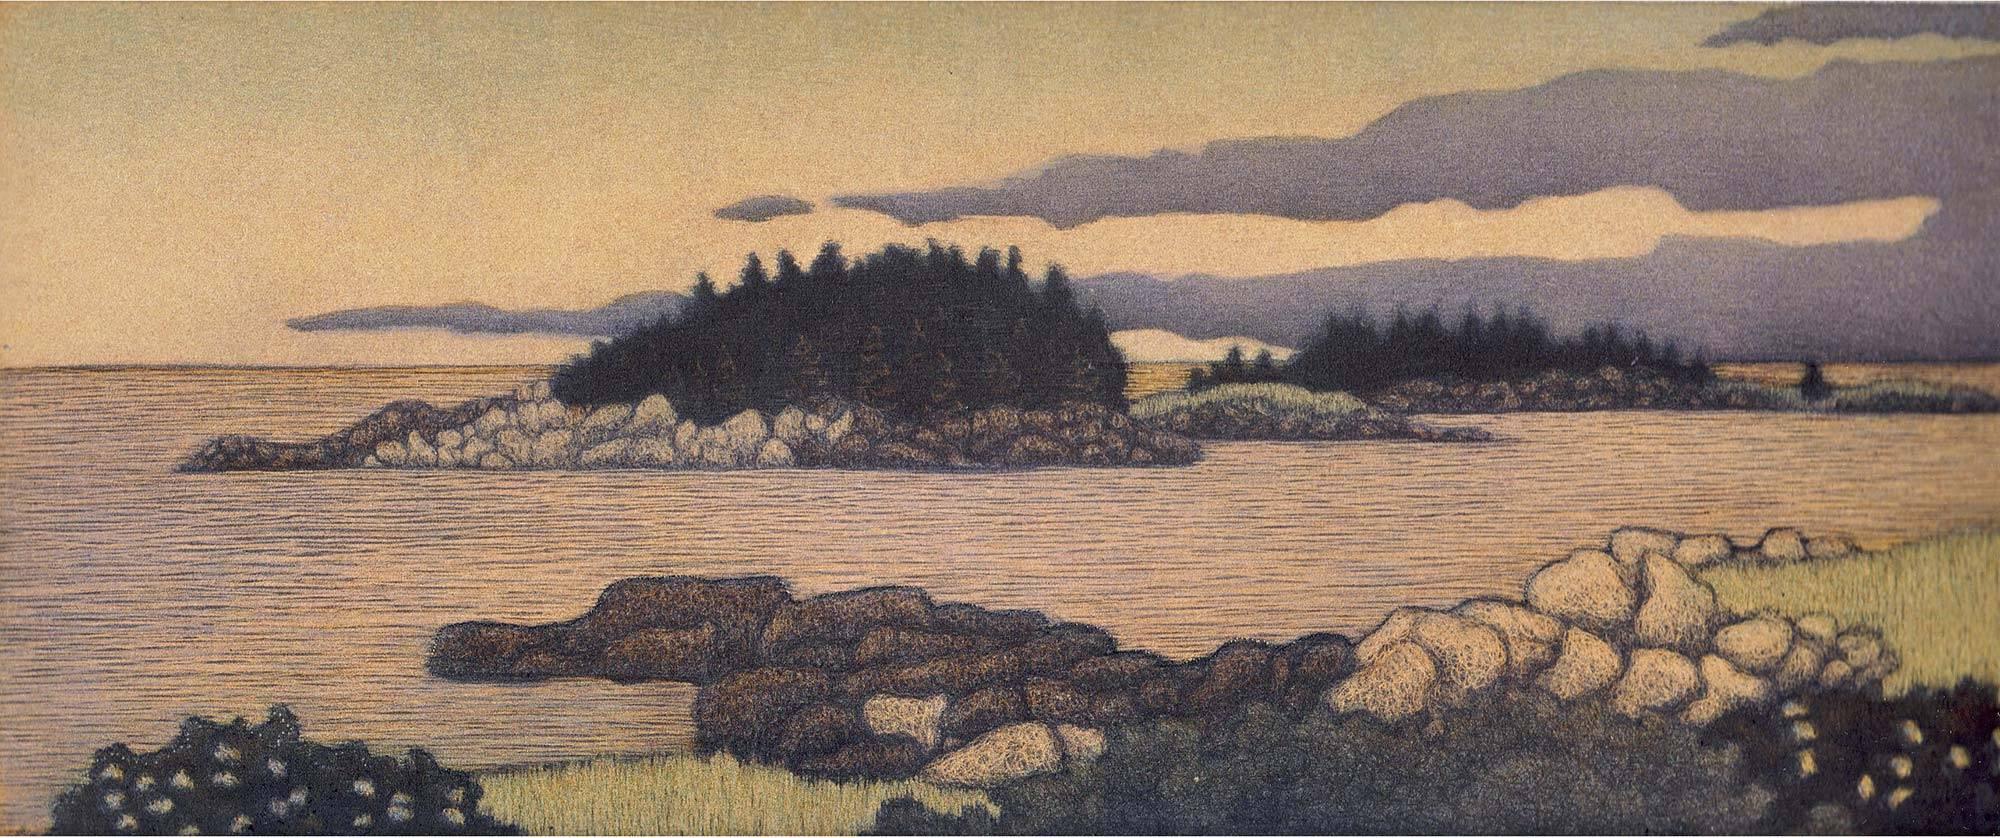 James Groleau Landscape Print - Corea Harbor